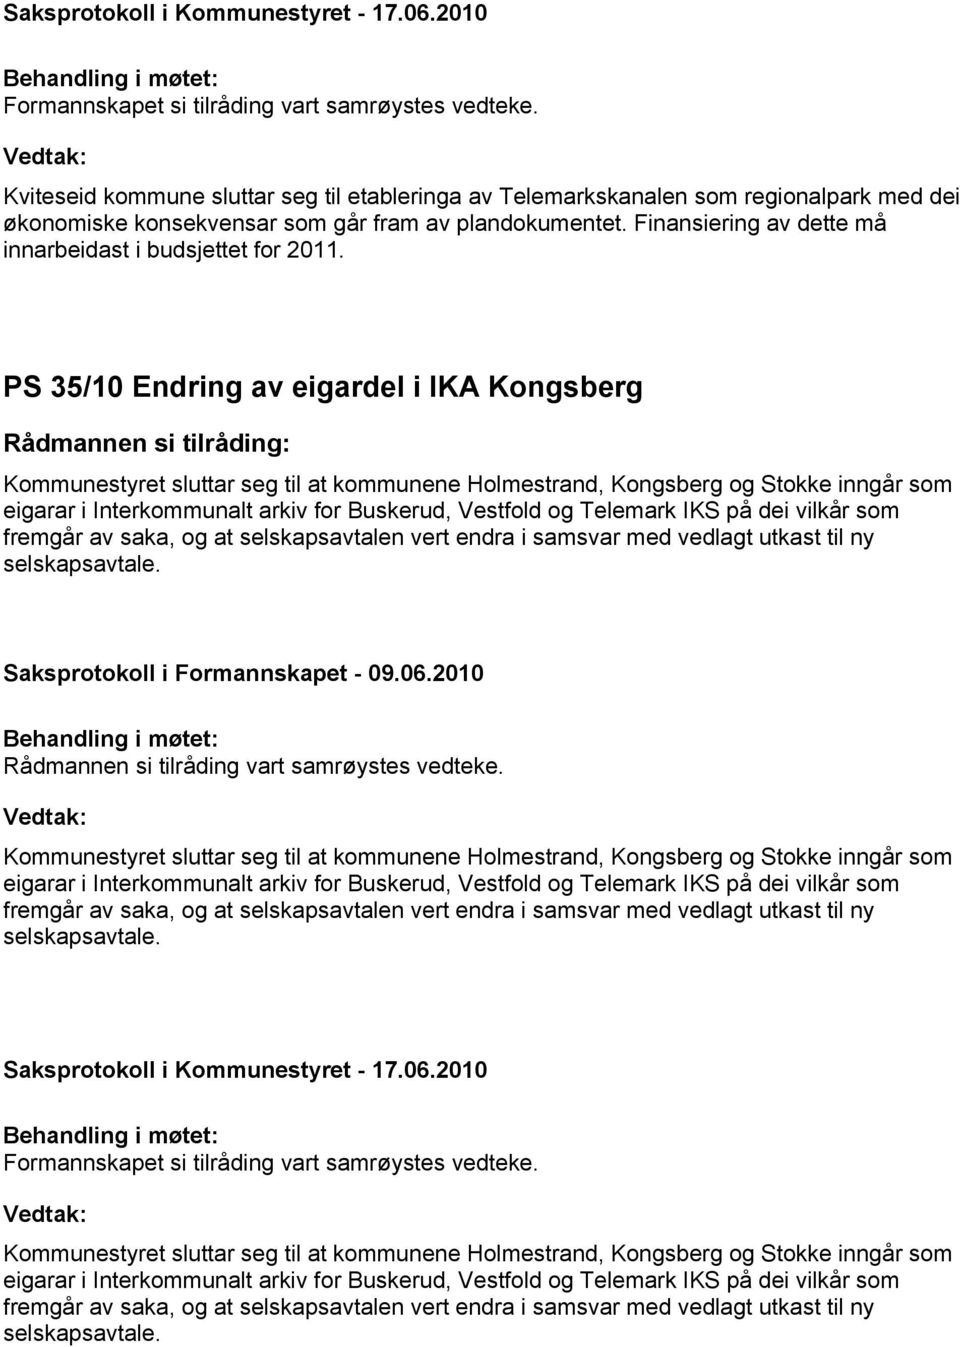 PS 35/10 Endring av eigardel i IKA Kongsberg Kommunestyret sluttar seg til at kommunene Holmestrand, Kongsberg og Stokke inngår som eigarar i Interkommunalt arkiv for Buskerud, Vestfold og Telemark